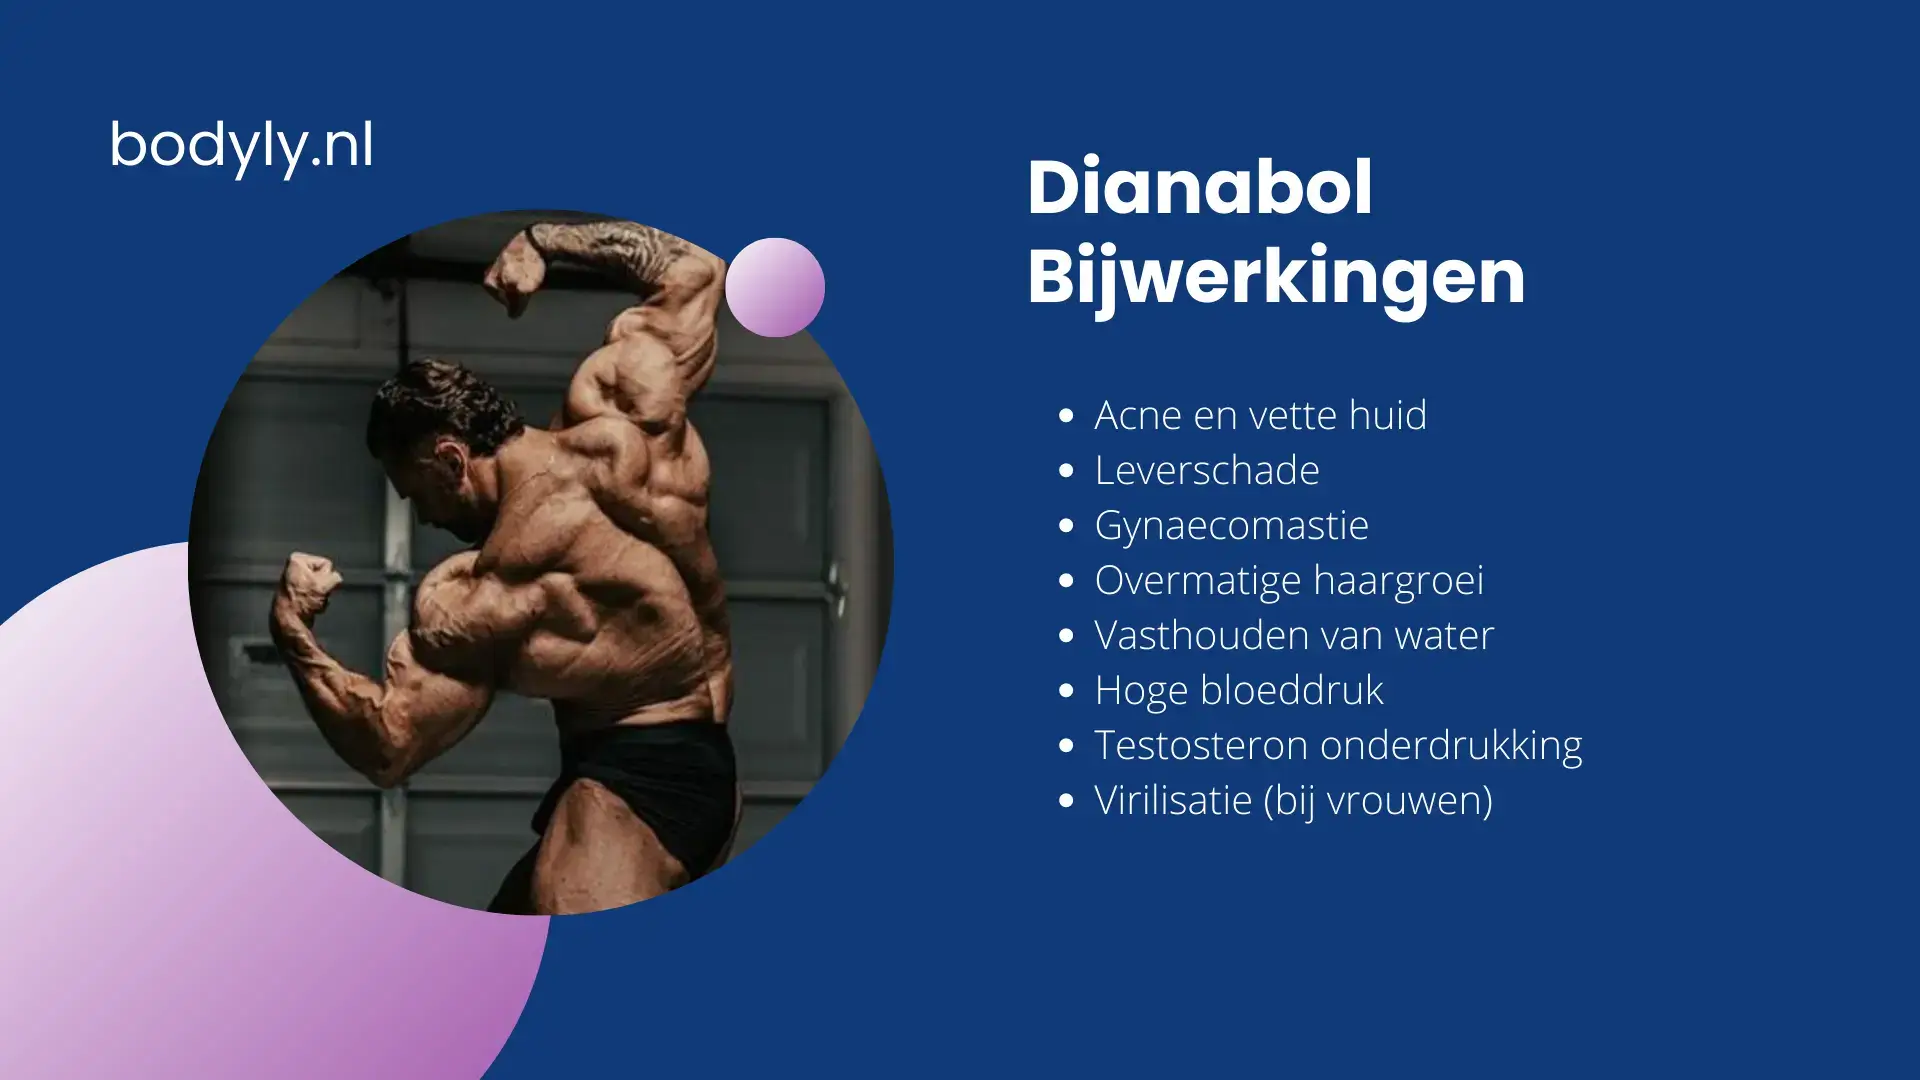 Dianabol bijwerkingen